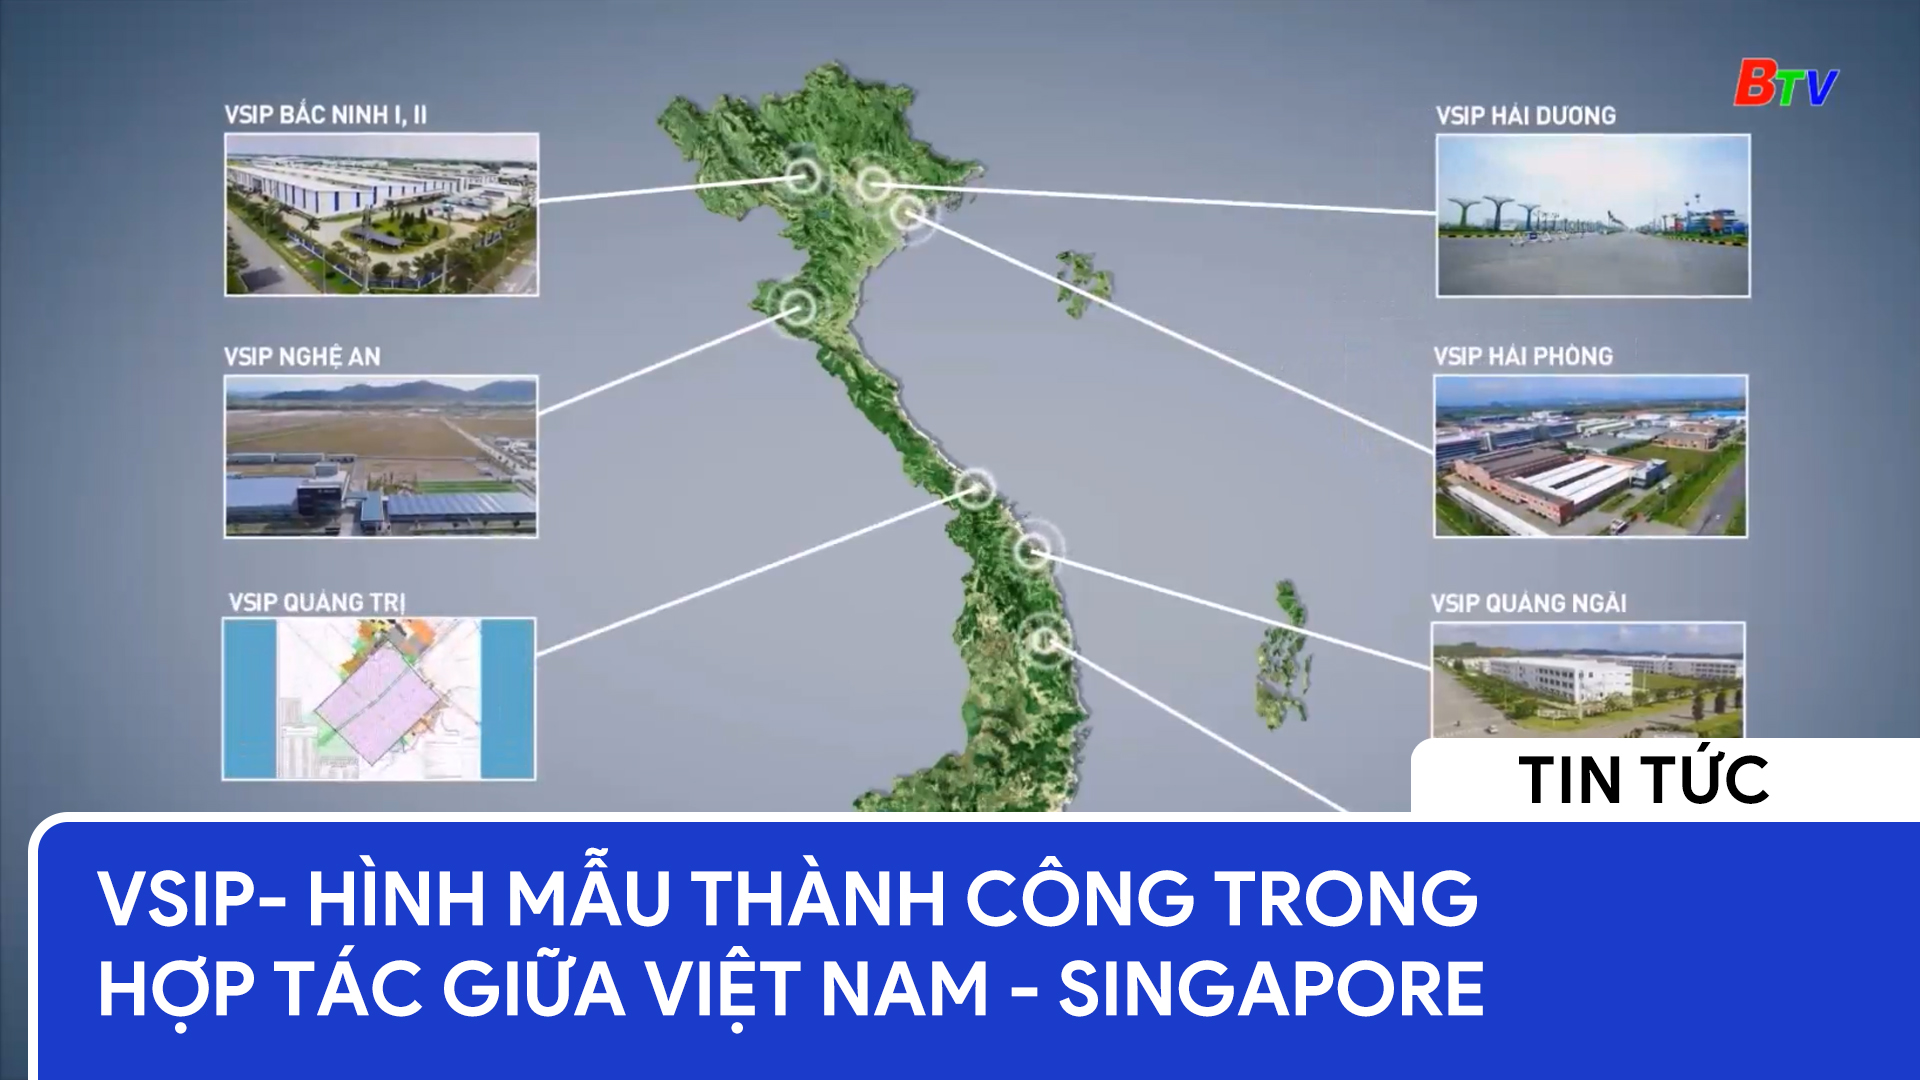 VSIP - Hình mẫu thành công trong hợp tác giữa Việt Nam - Singapore